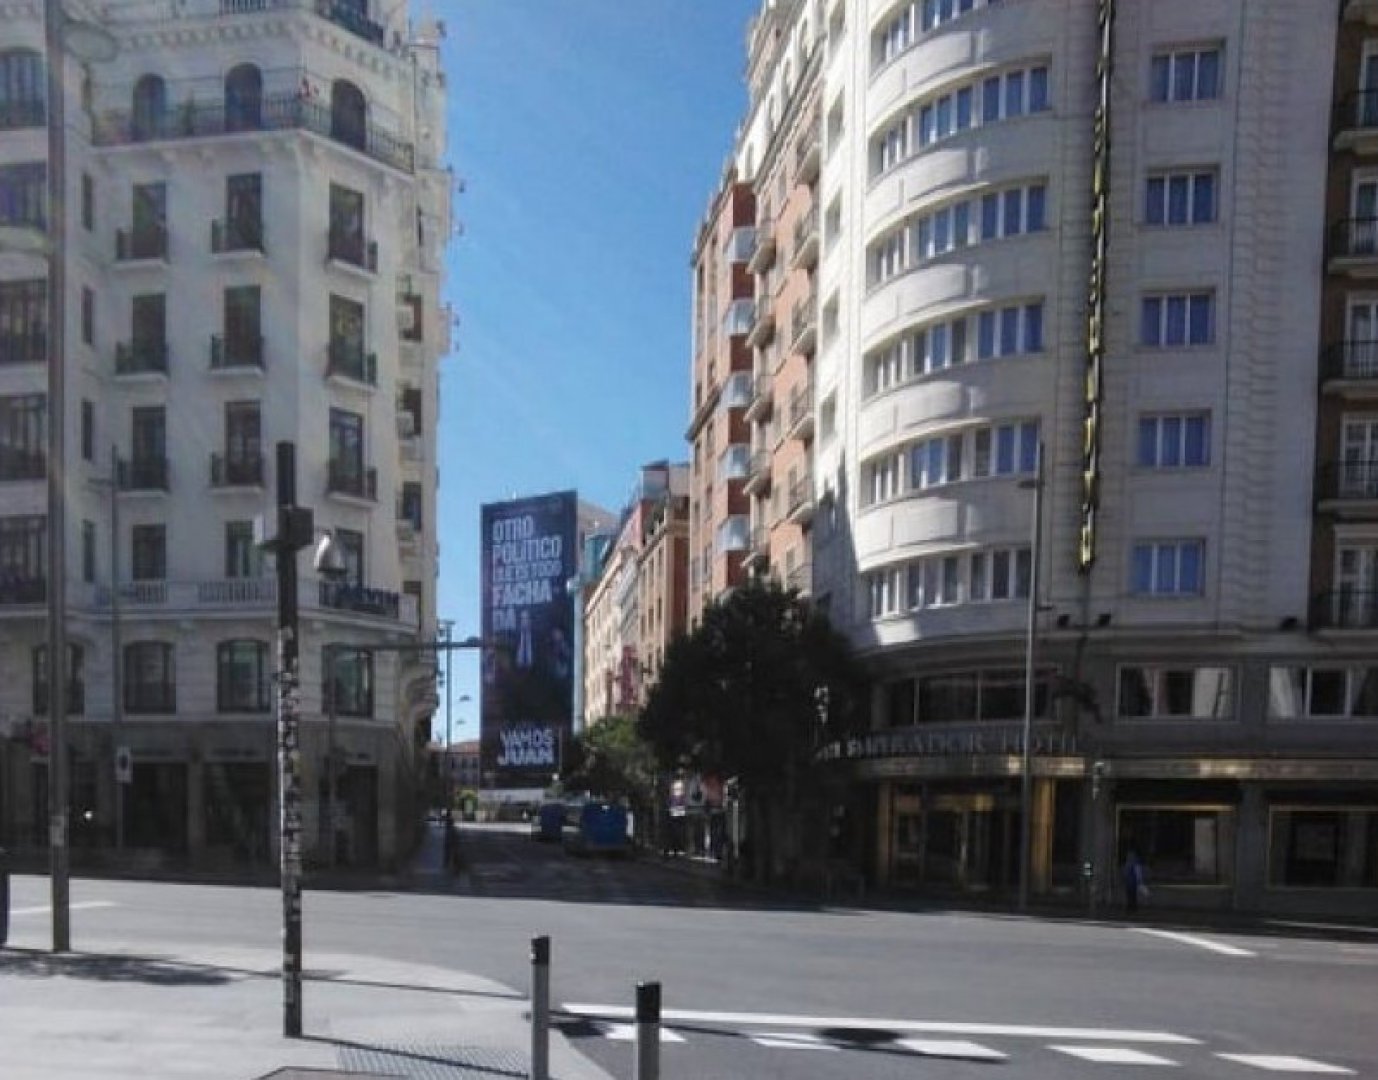 Необичайно тихи и пусти са улиците на испанската столица Мадрид. Снимки Ангелина Горанова